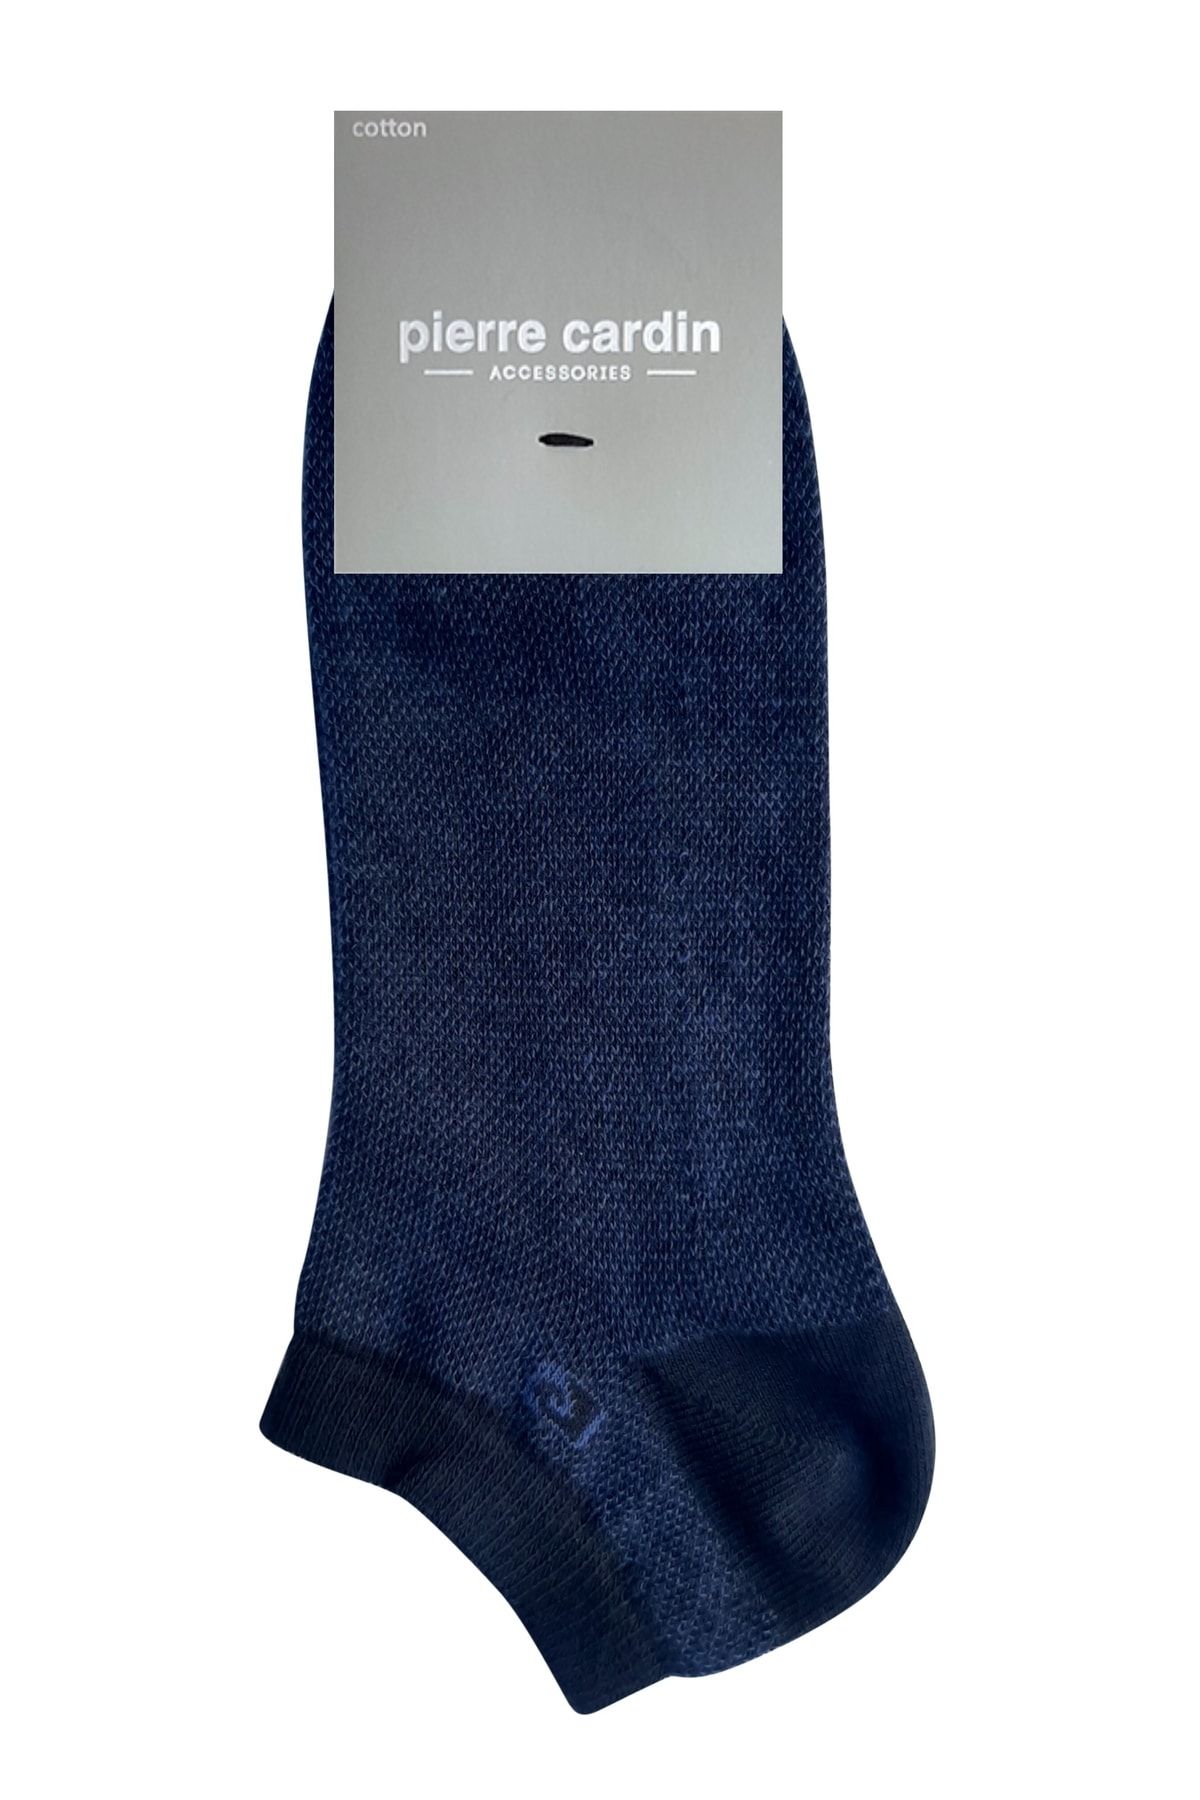 جوراب  مردانه نخی پیر کاردین Pierre Cardin (برند فرانسه)